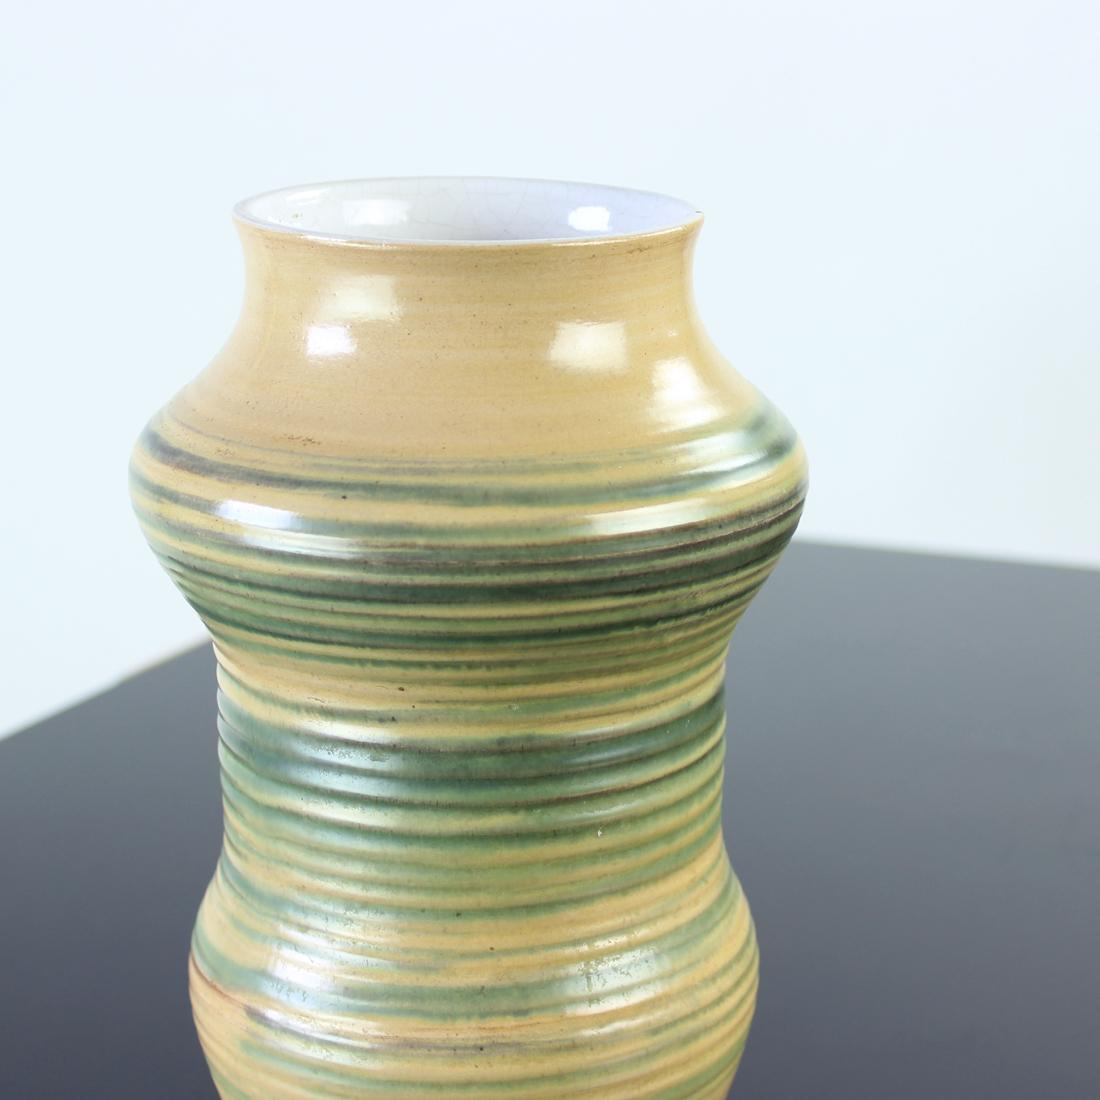 Beau vase du milieu du siècle produit en Tchécoslovaquie dans les années 1960. Le vase est en céramique avec glaçure. L'extérieur est peint à la main dans un design typique du milieu du siècle. L'intérieur est émaillé en blanc, de sorte que le vase